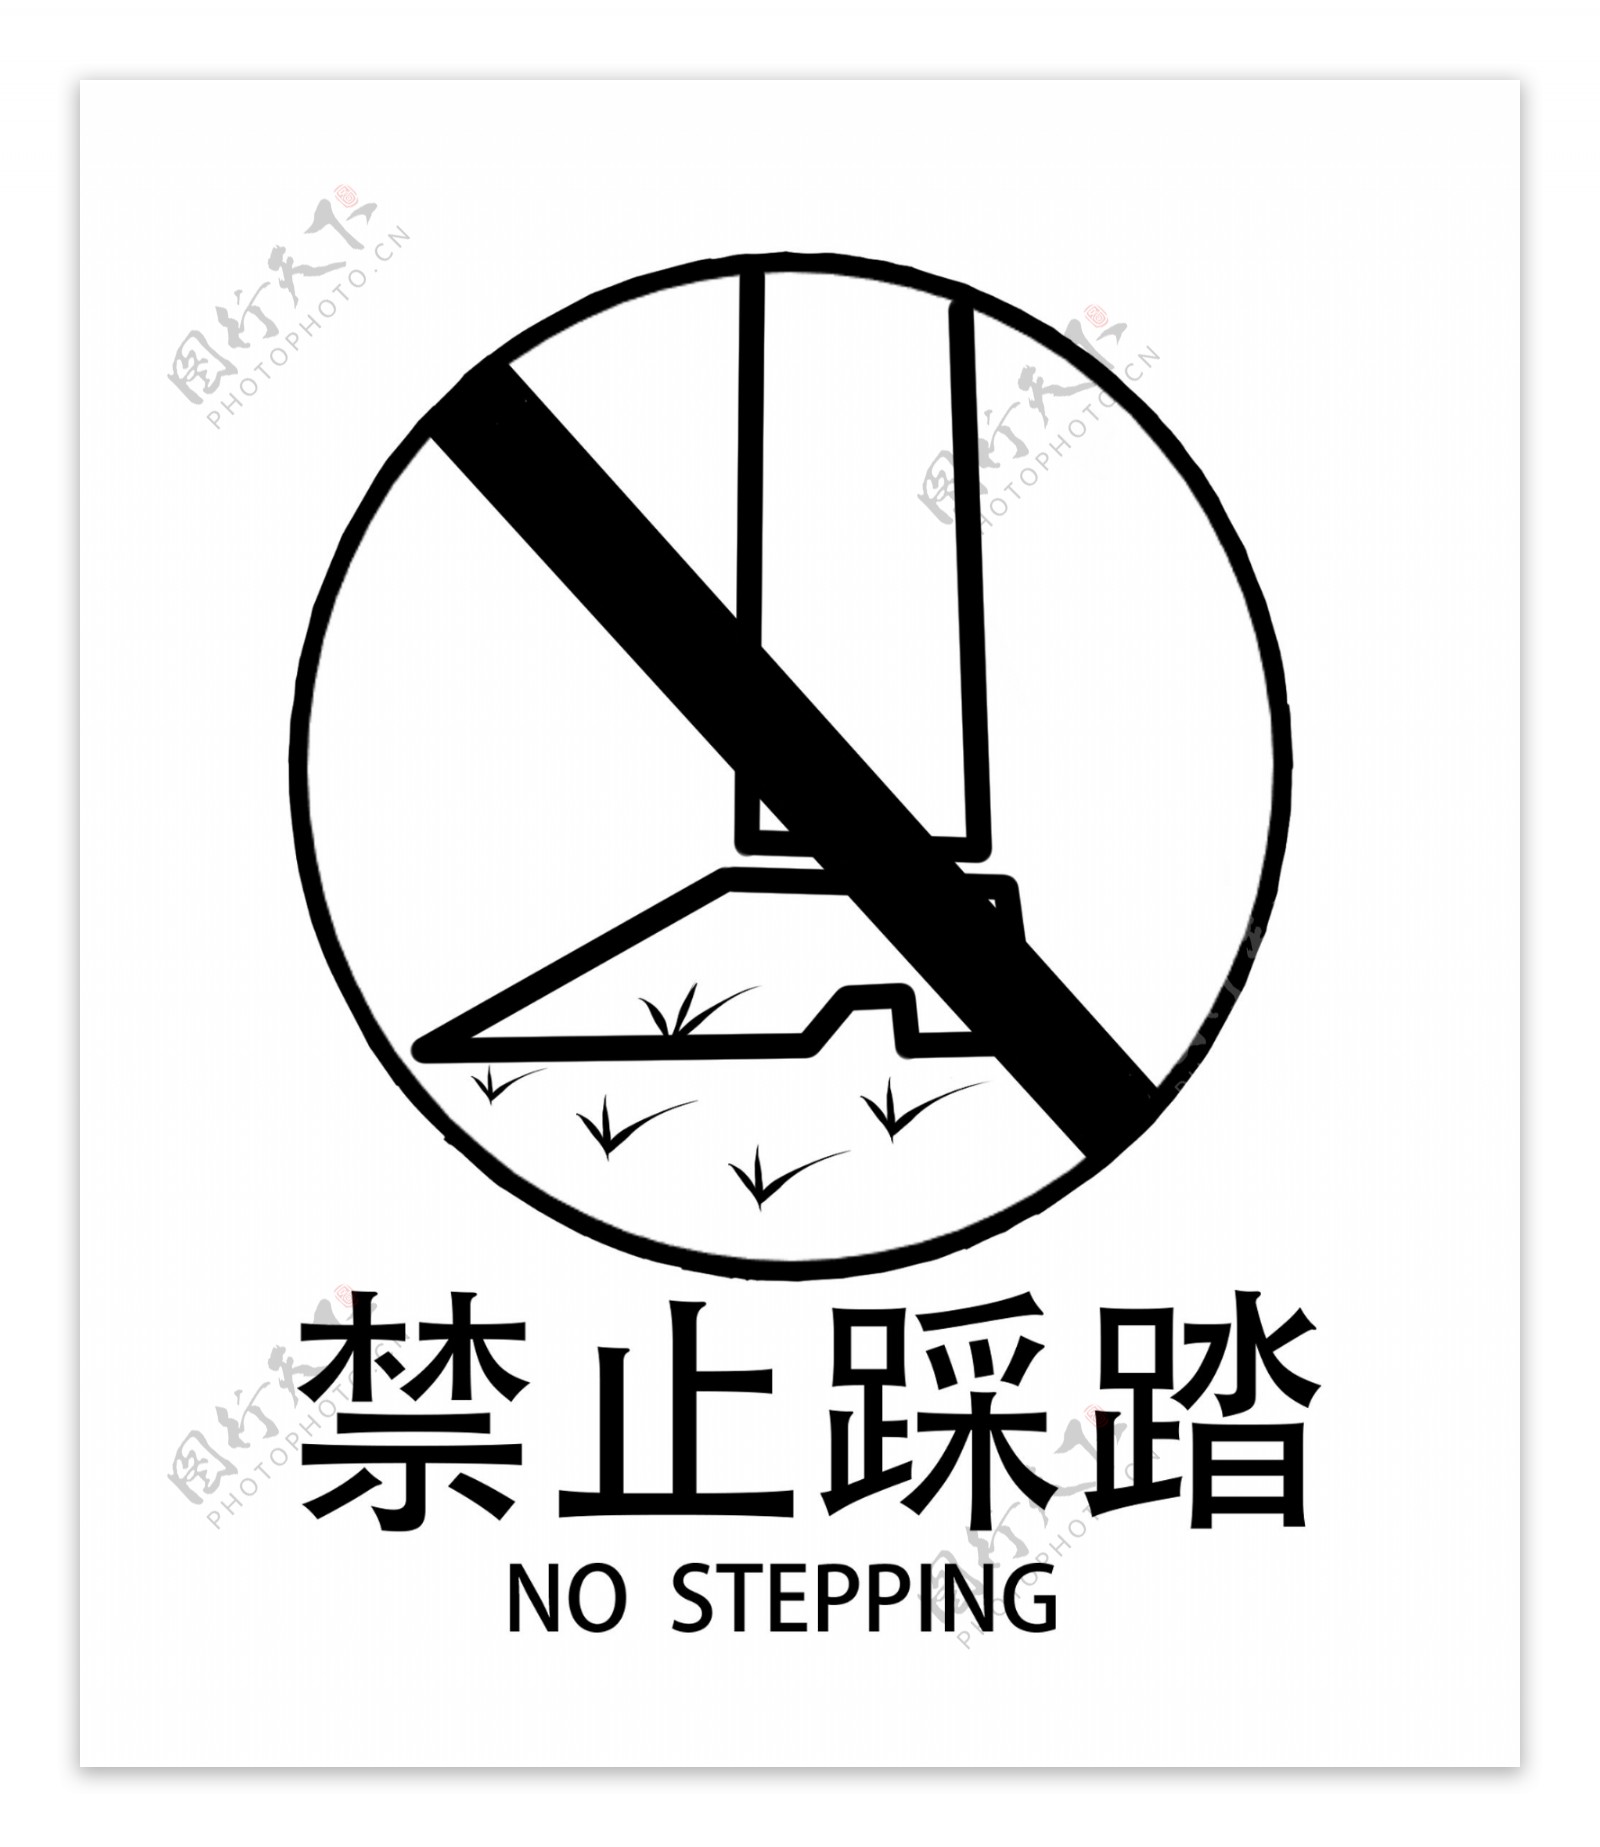 禁止踩踏警示牌插画